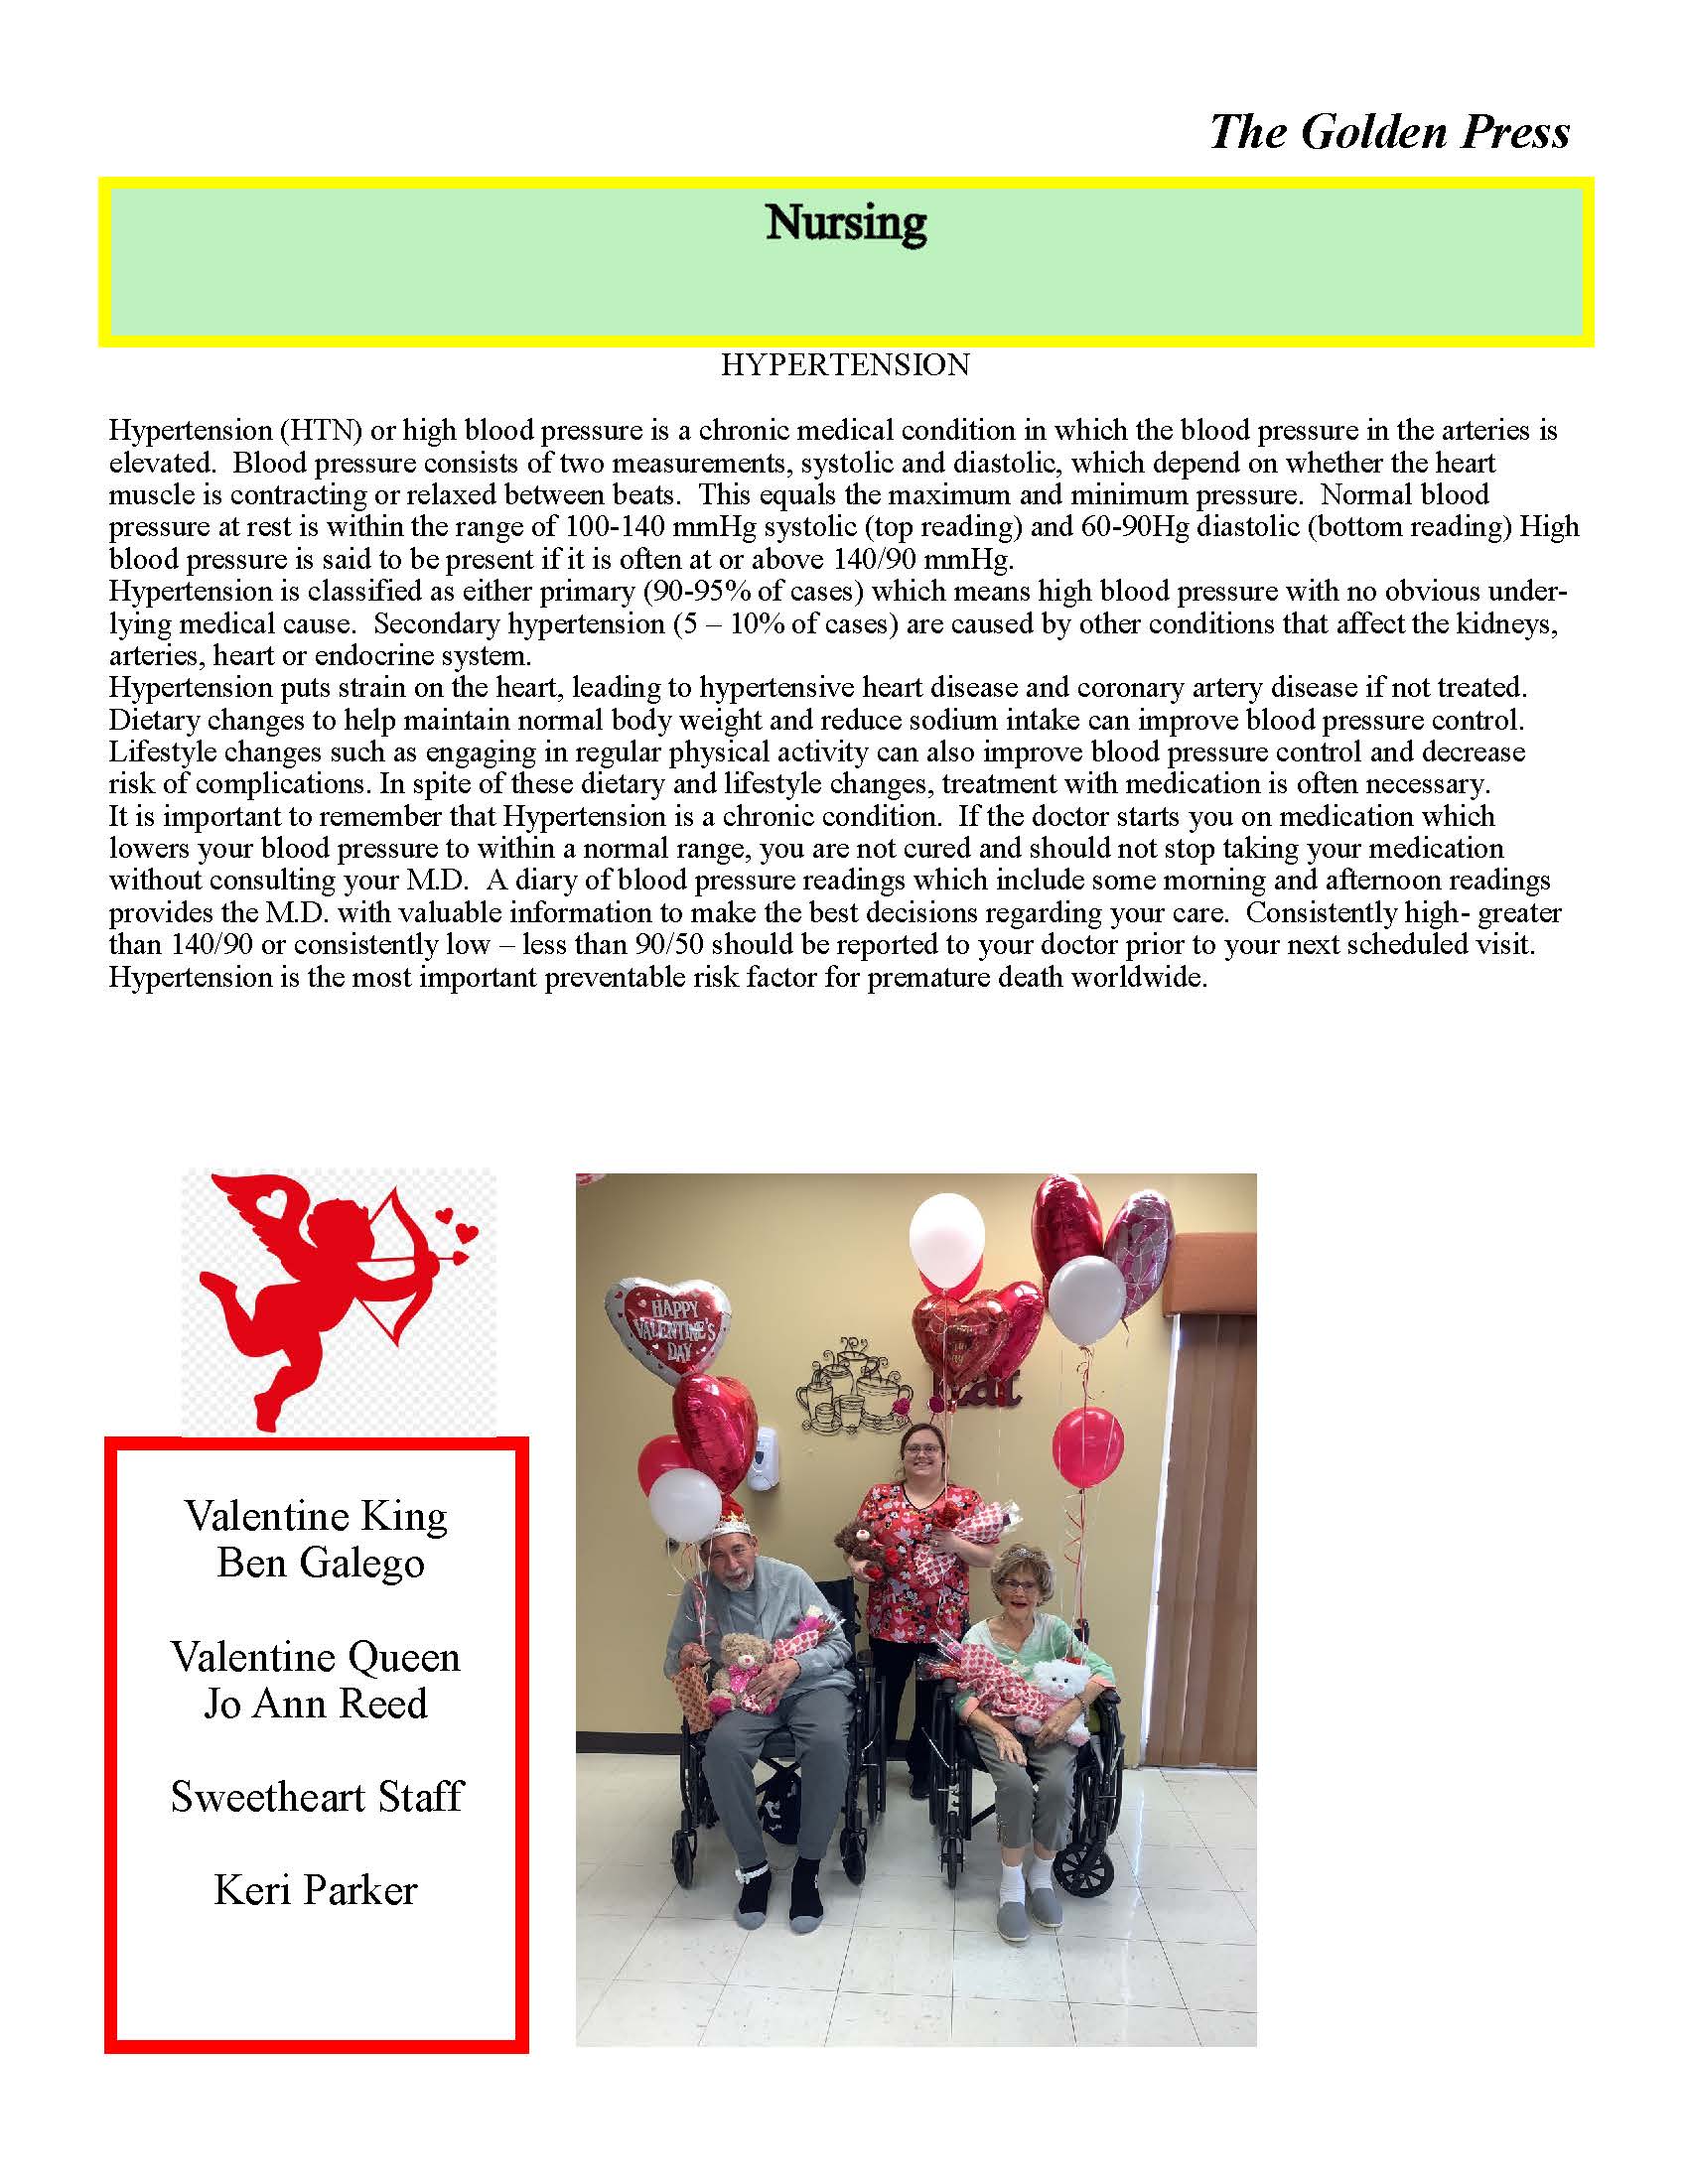 Dyer Nursing and Rehabilitation Center Newsletter